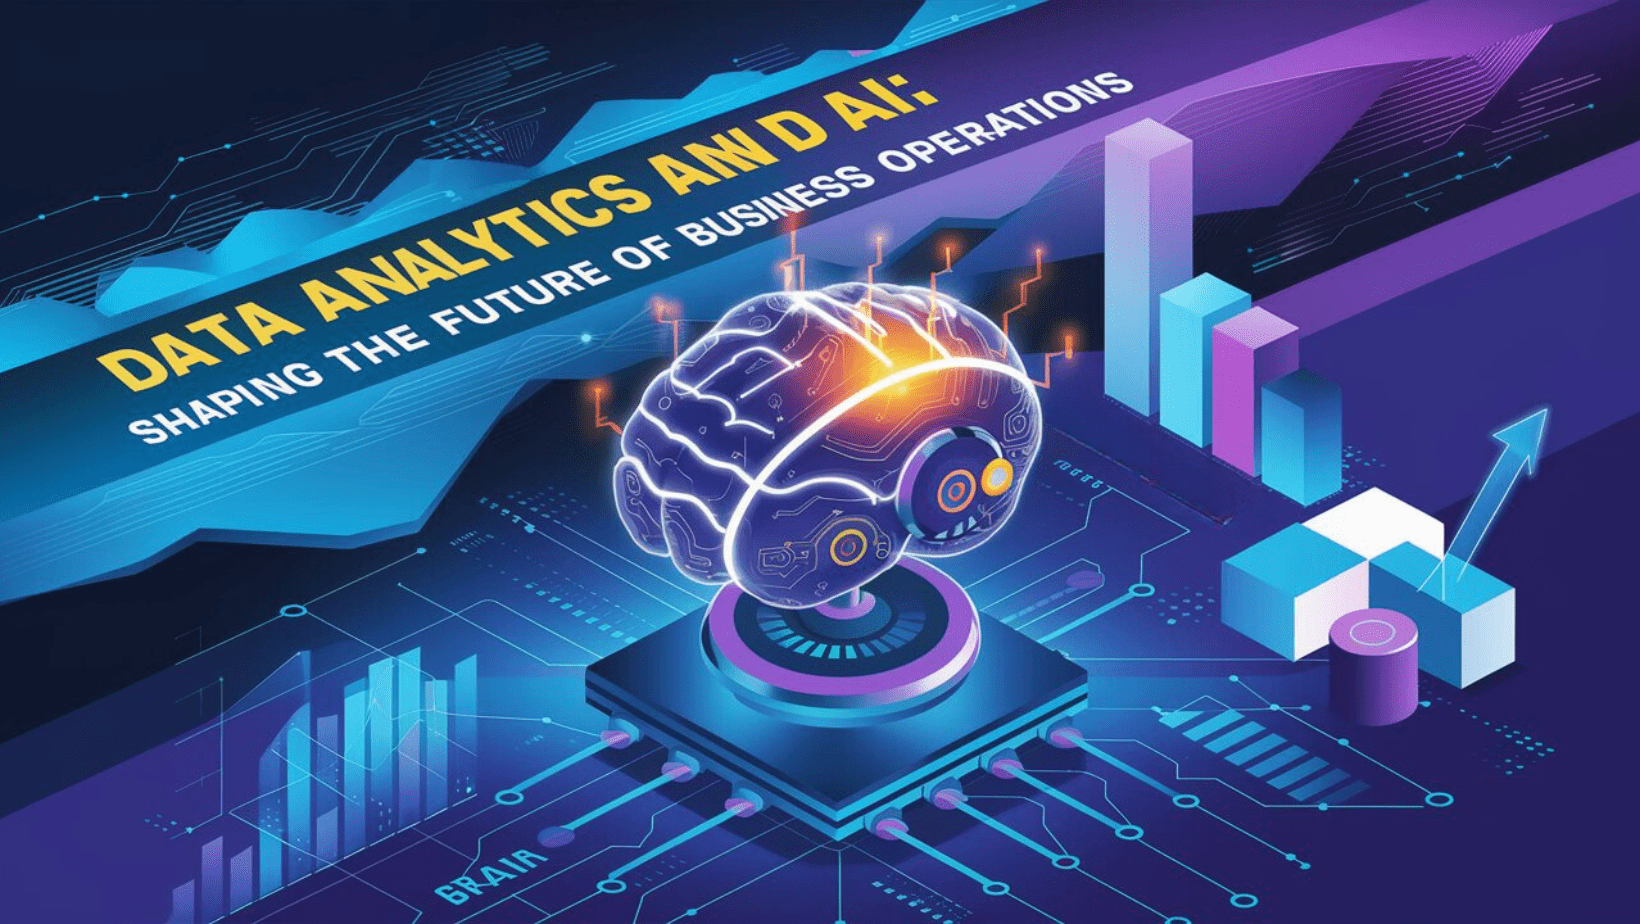 Data analytics and AI